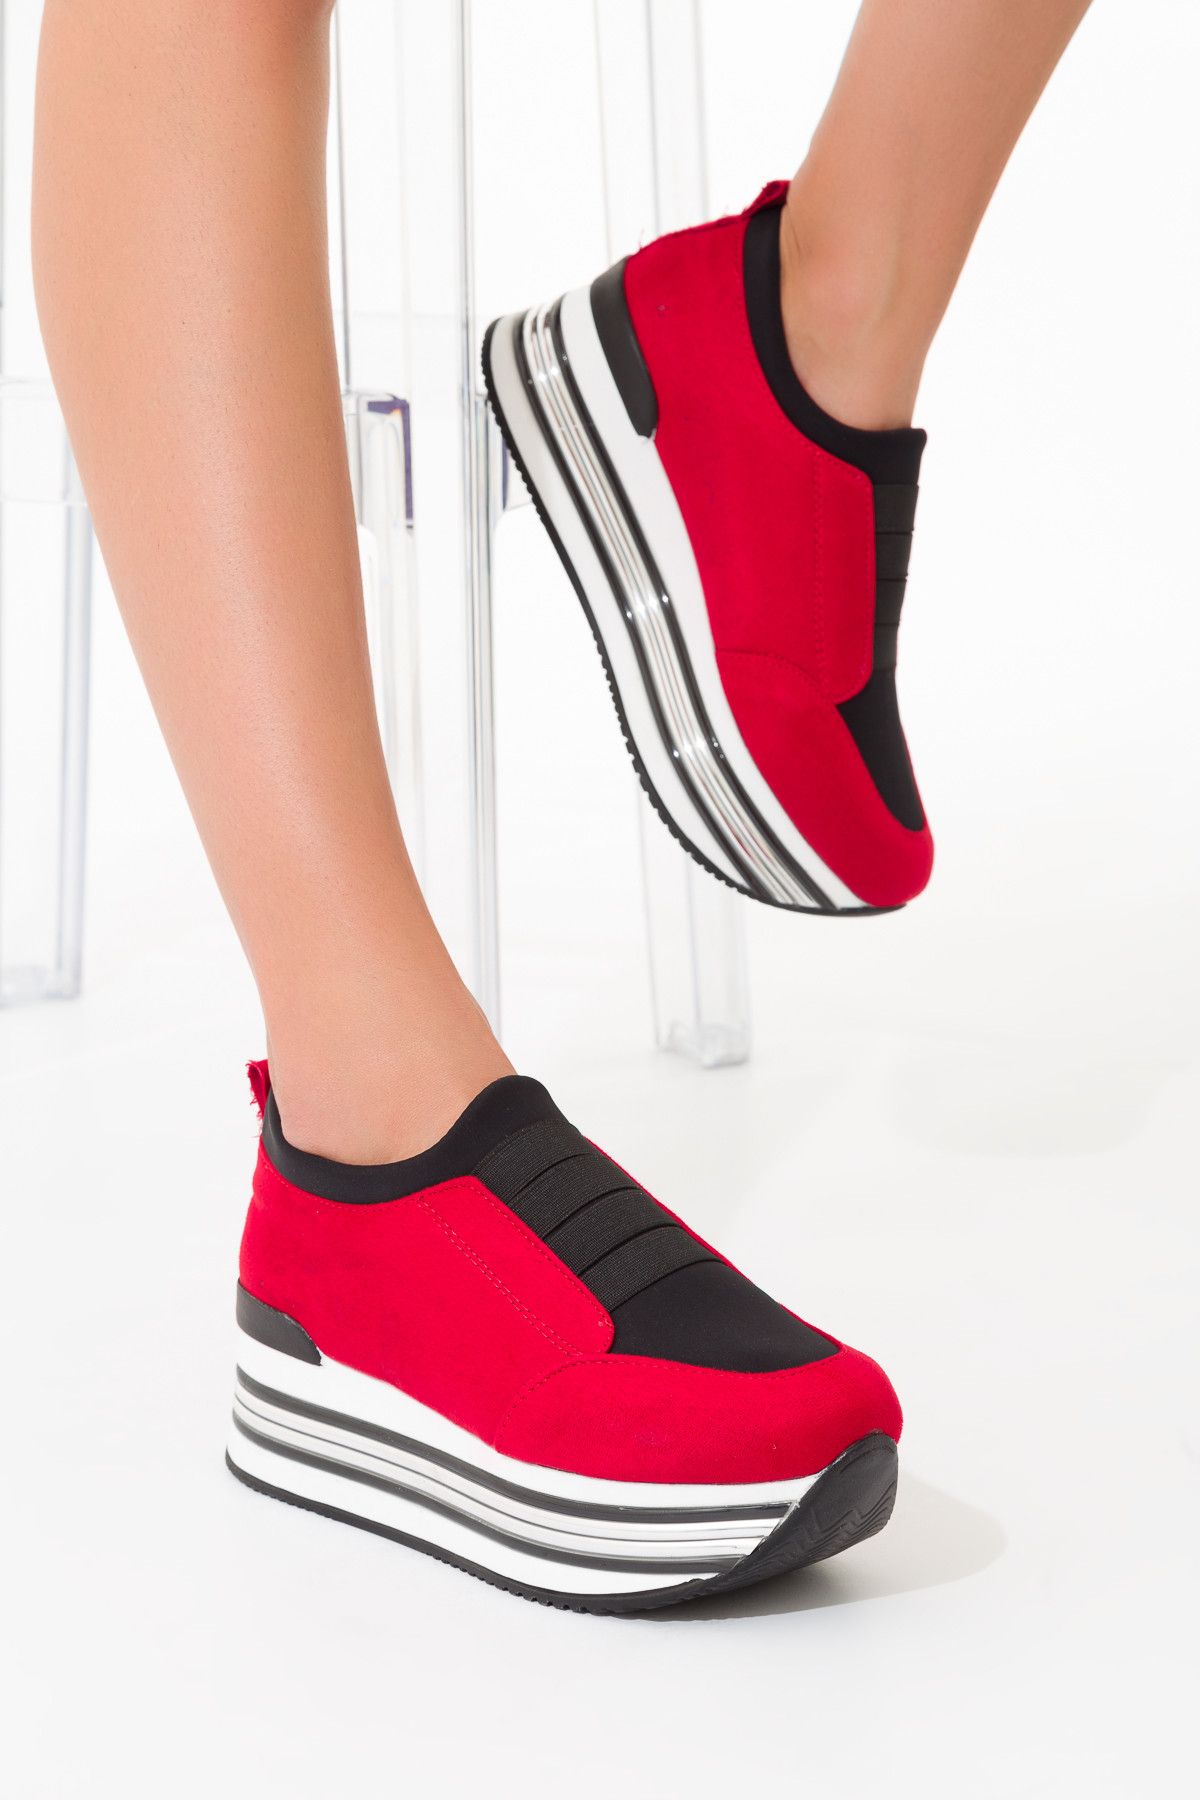 SOHO Kırmızı Süet Kadın Dolgu Topuklu Ayakkabı 9671